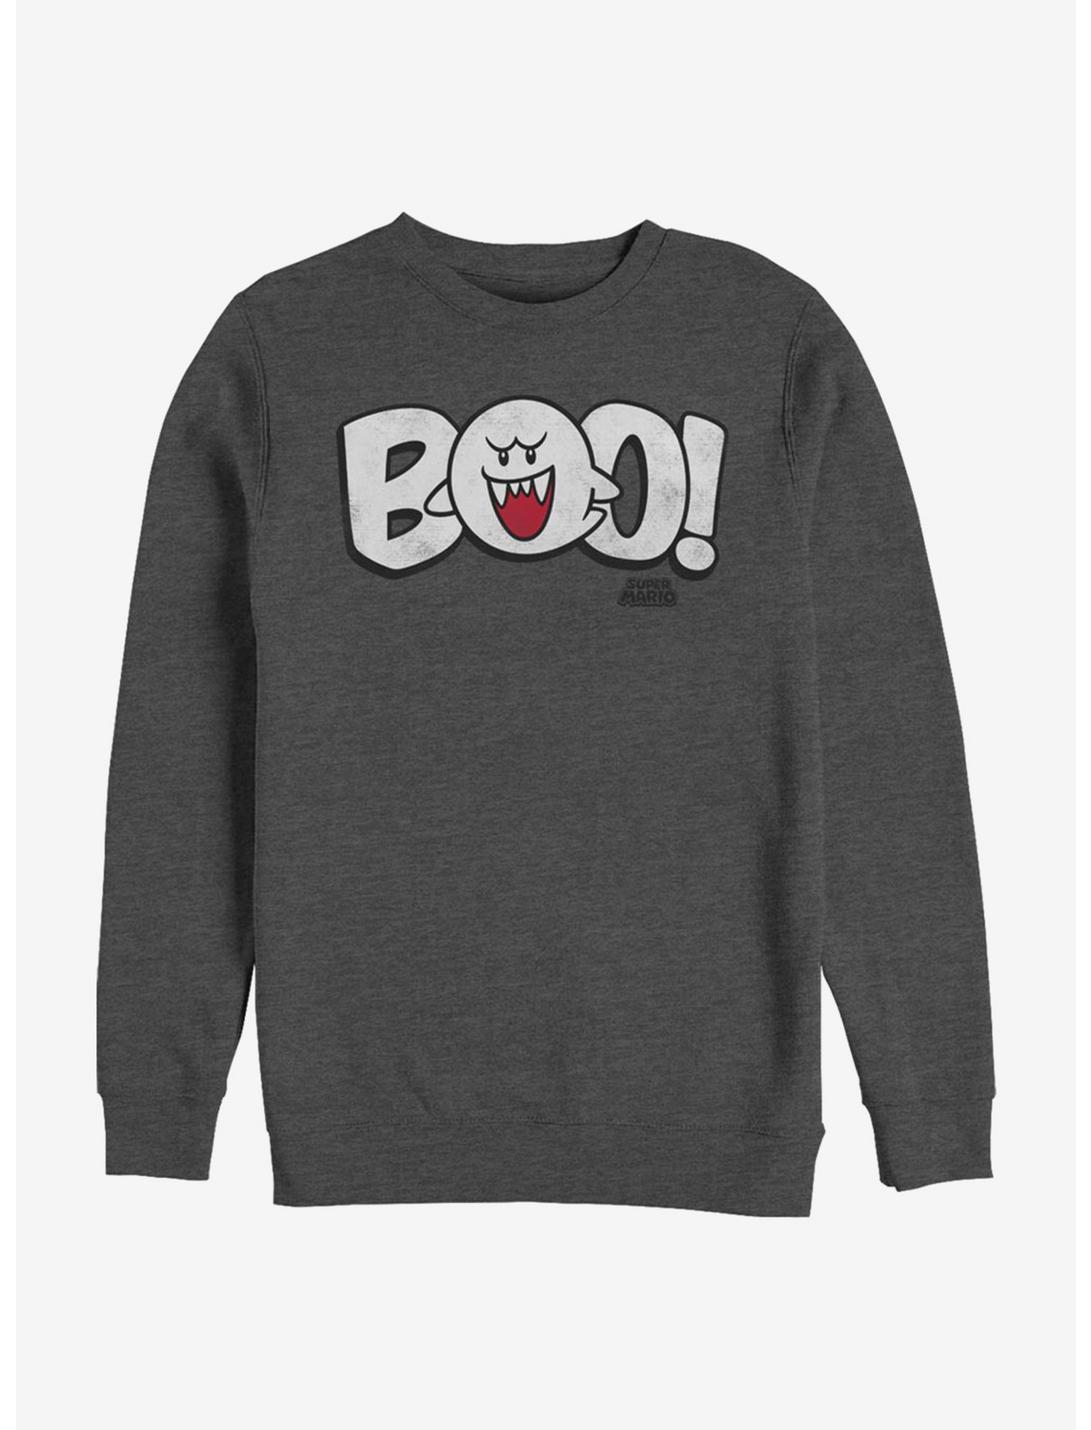 Super Mario Boo! Crew Sweatshirt, CHAR HTR, hi-res